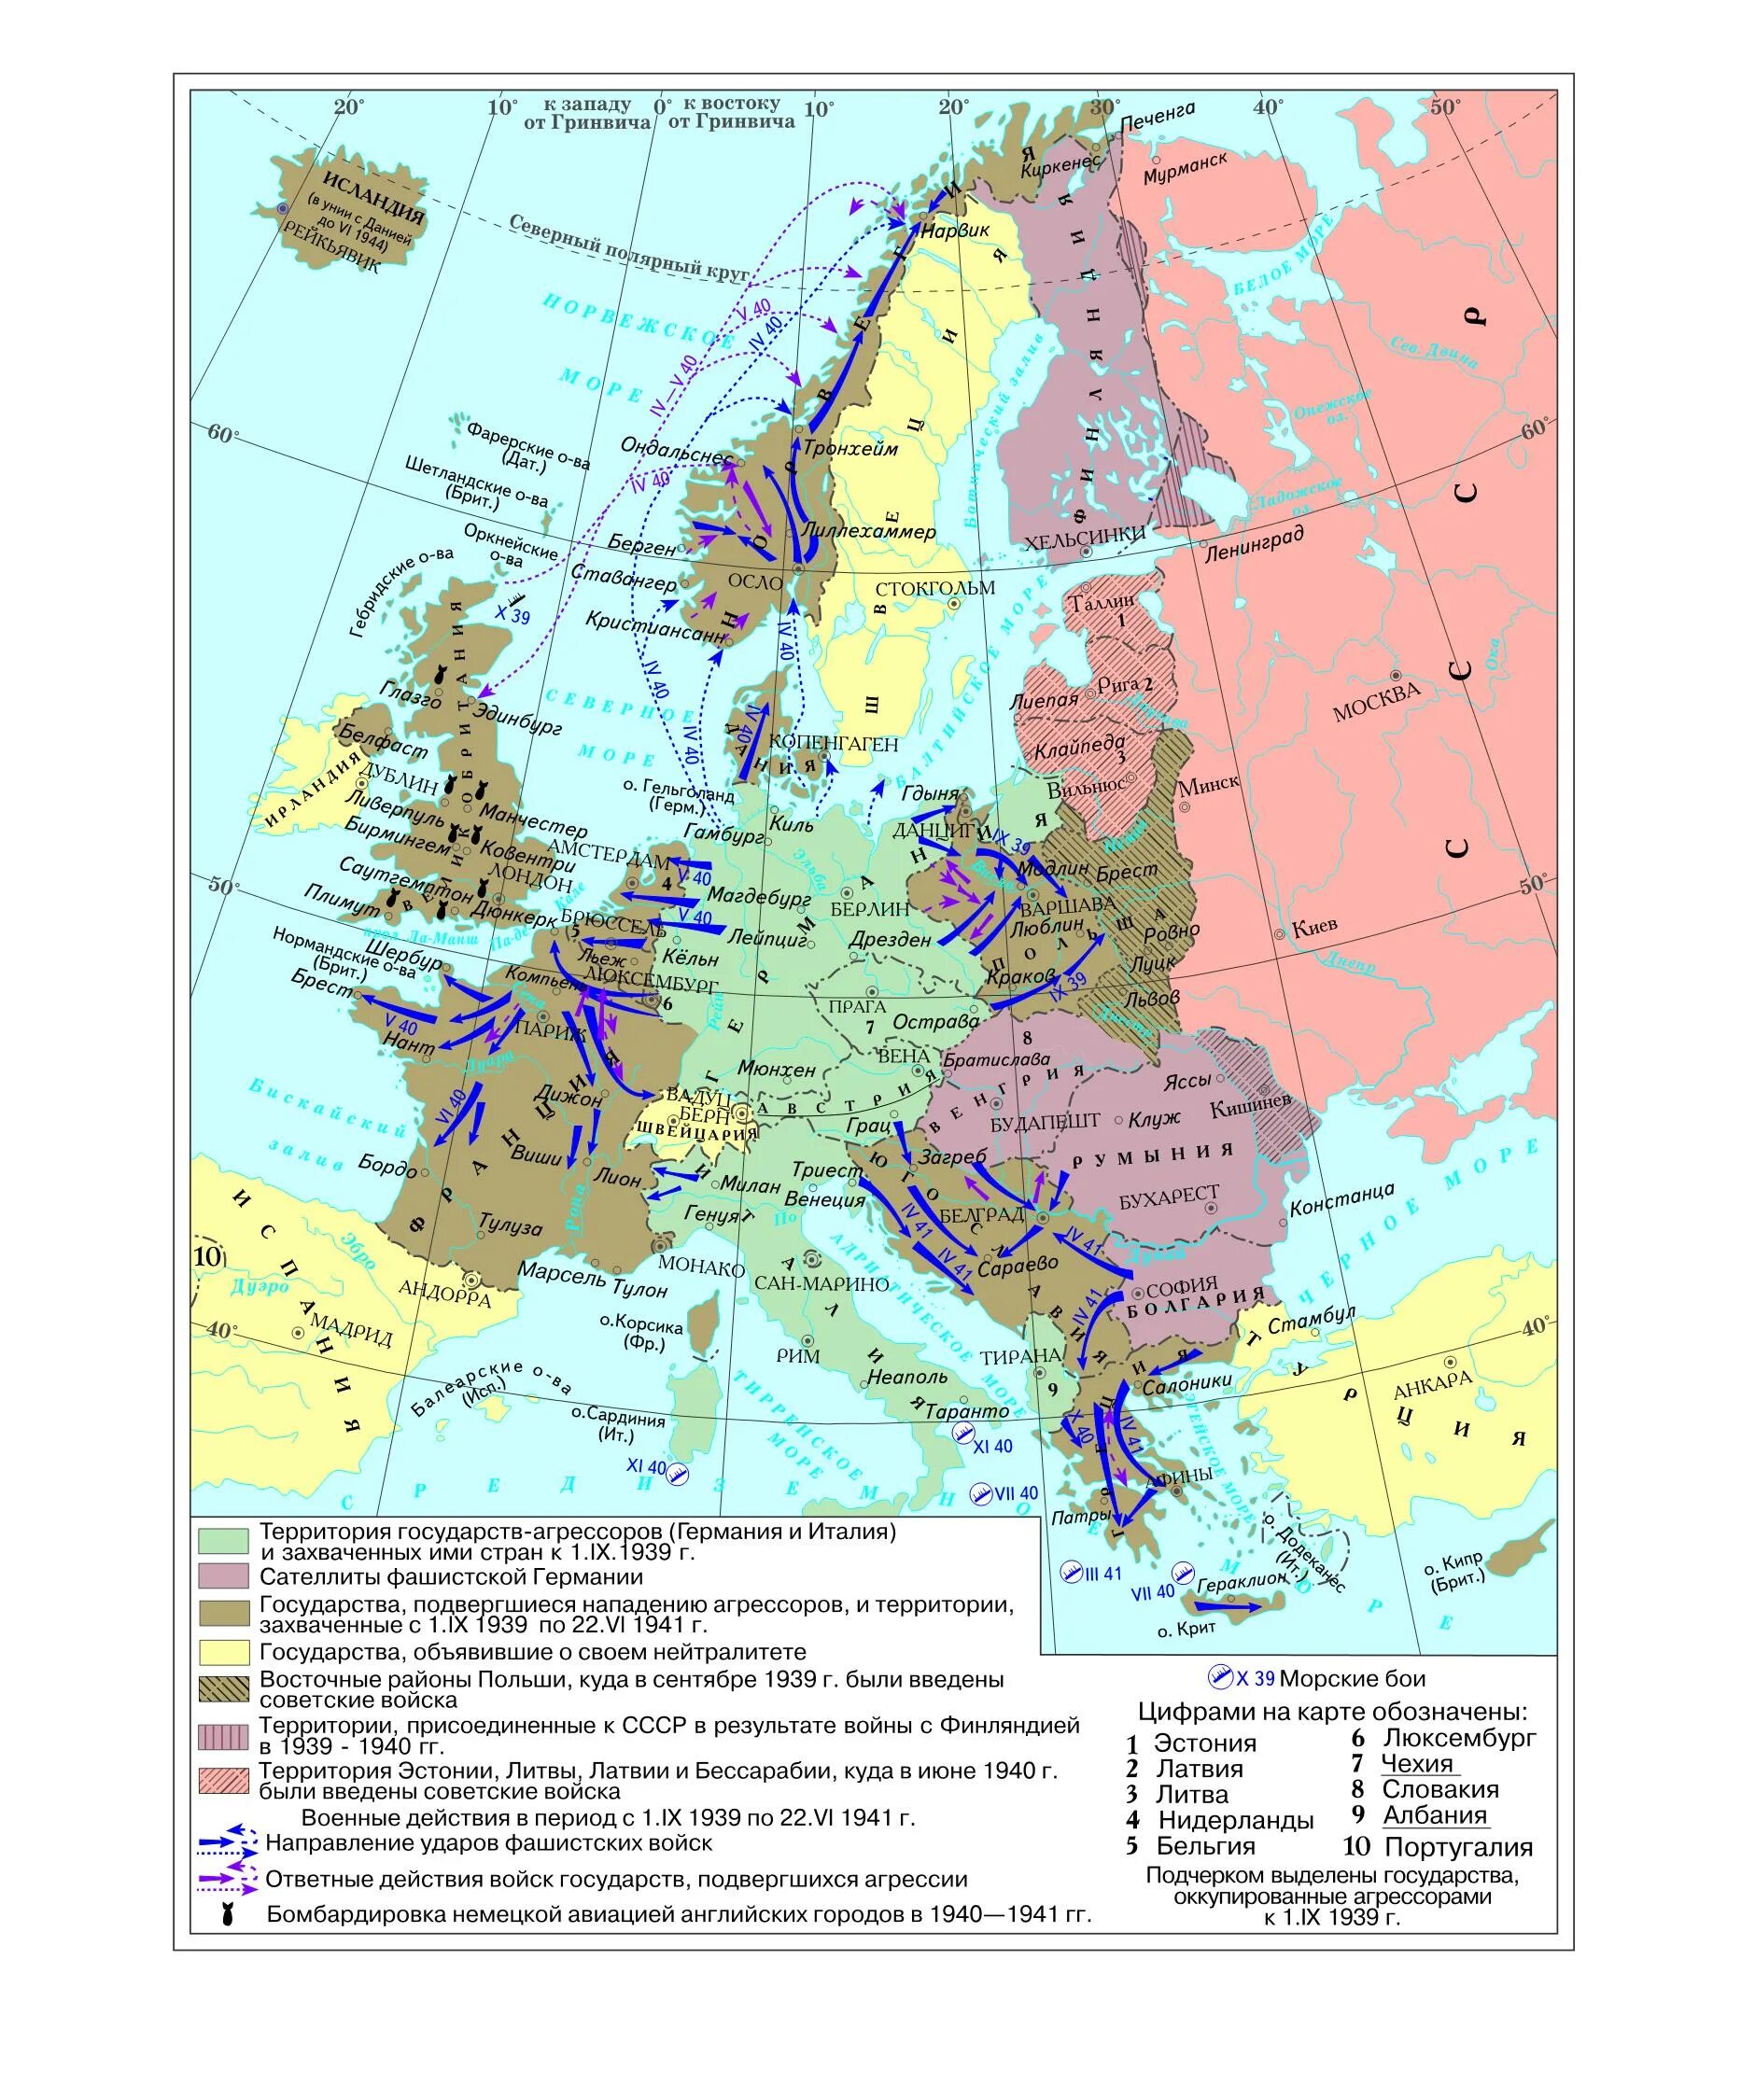 Карта фашистской Германии 1939. Карта второй мировой войны в 1939-1942. Карта Европы по государств до 2 мировой войны. Какие государства были фашистскими